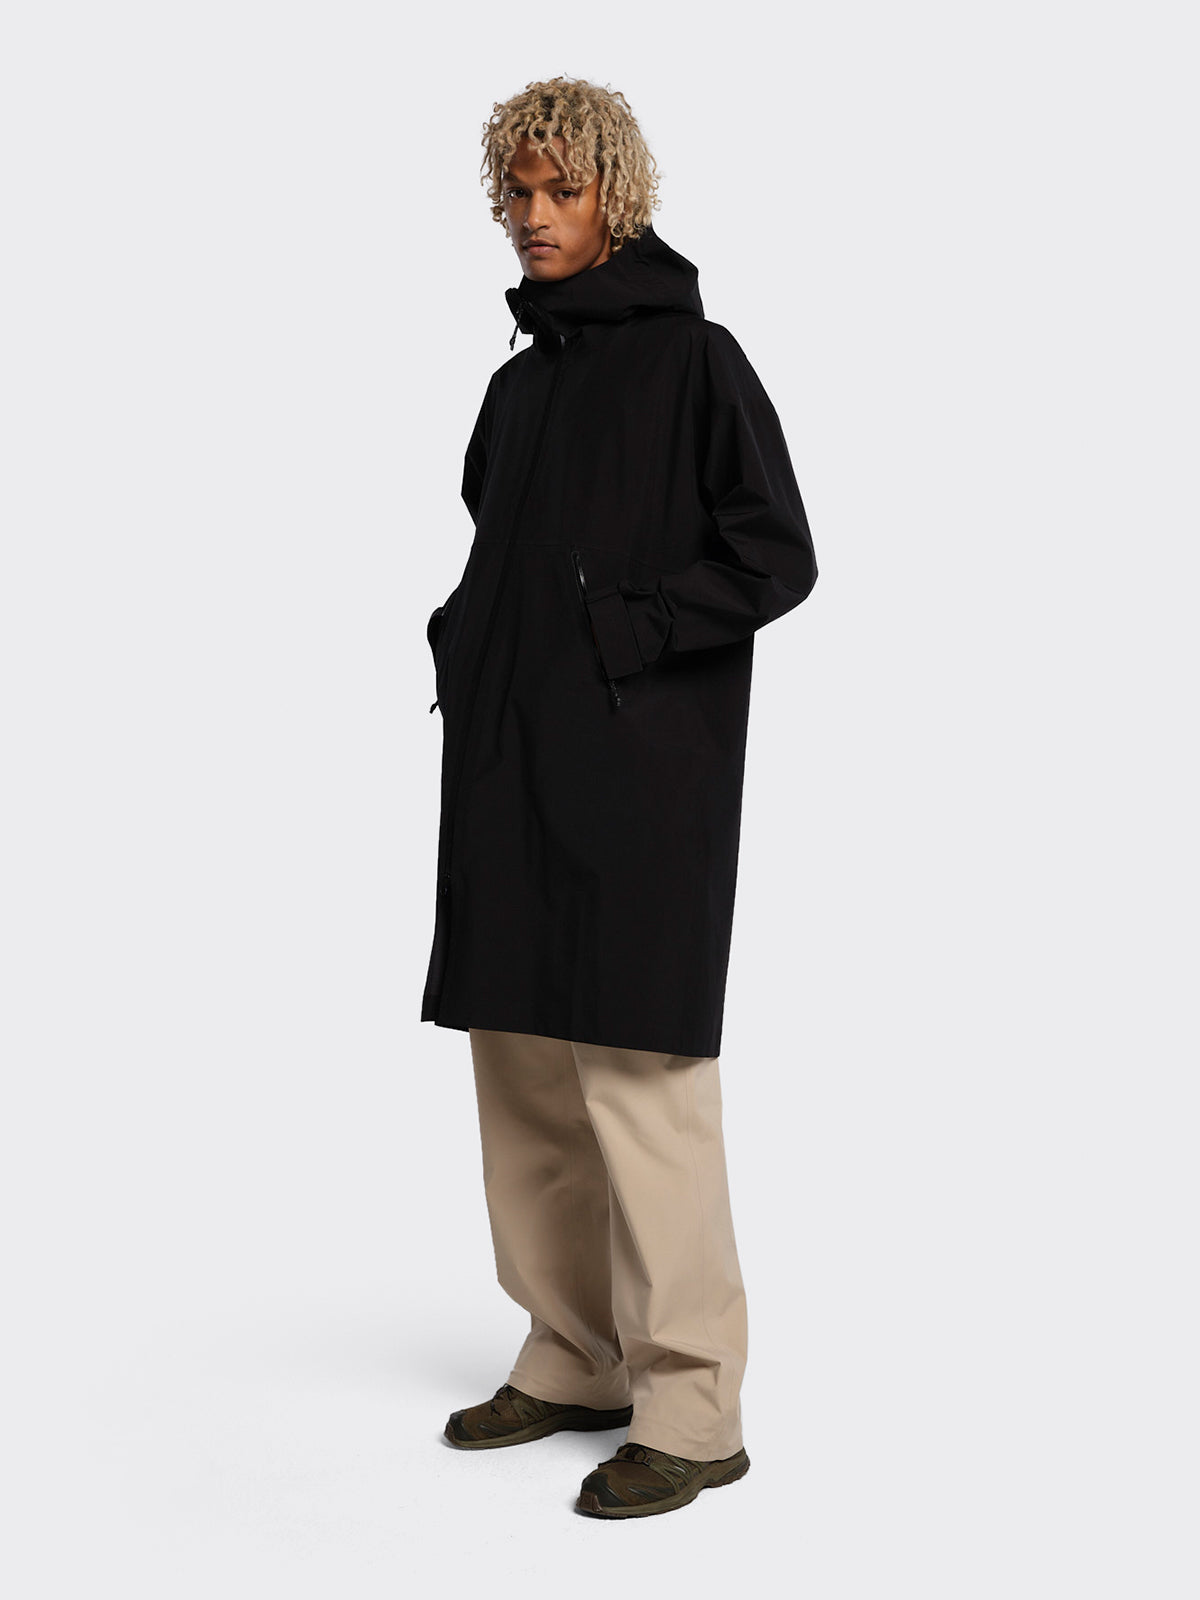 Man wearing Rovde coat by blæst in Black